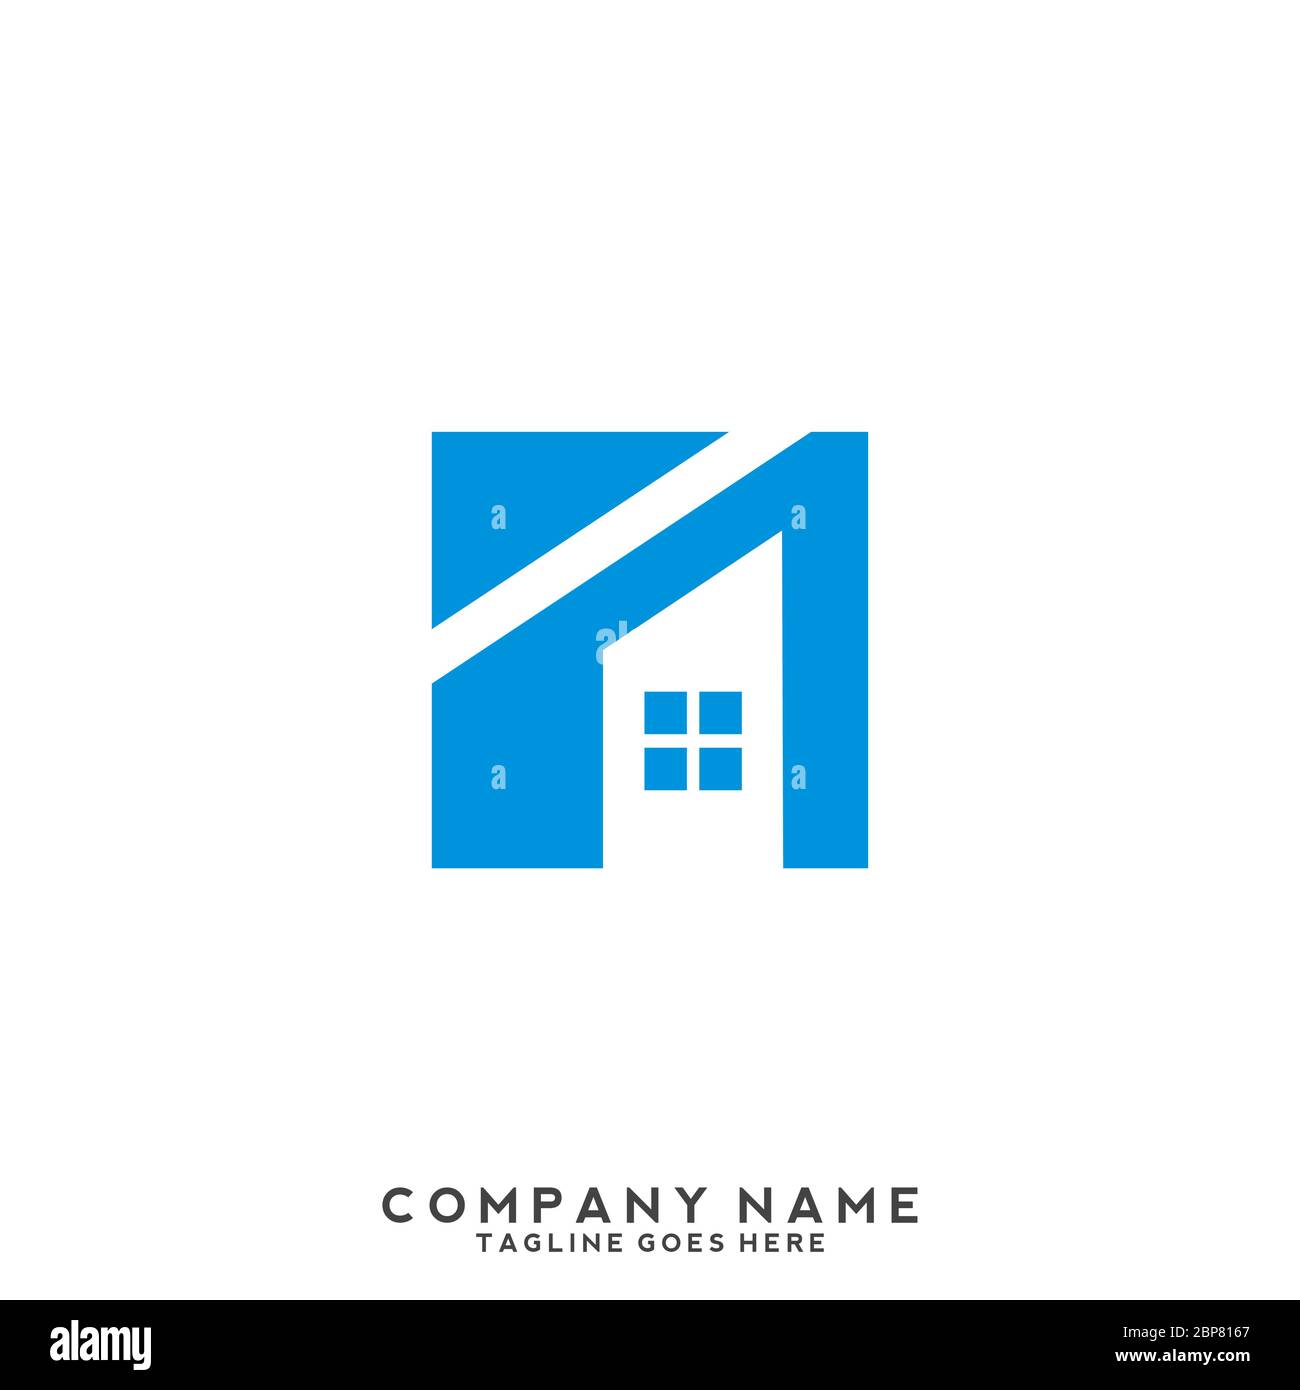 Logo-Design Für Immobilien. Creative abstrakt Immobilien-Symbol Logo und Visitenkarte Vorlage. Stock Vektor